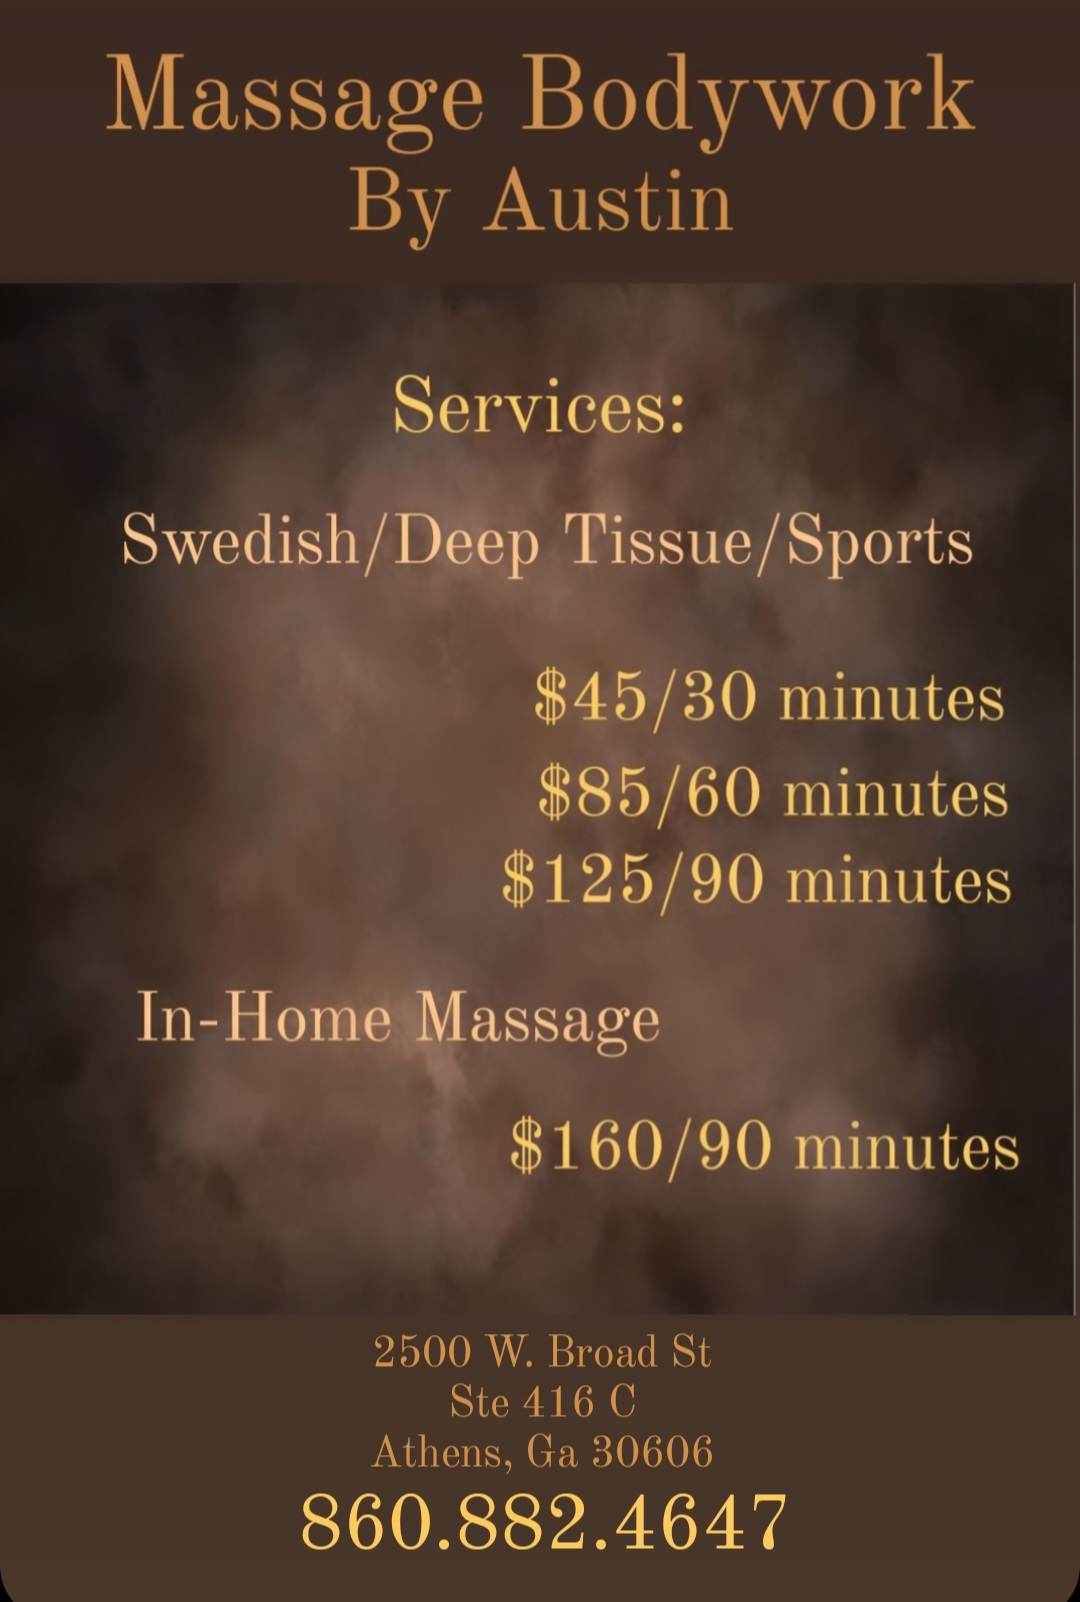 massage bodywork by austin services